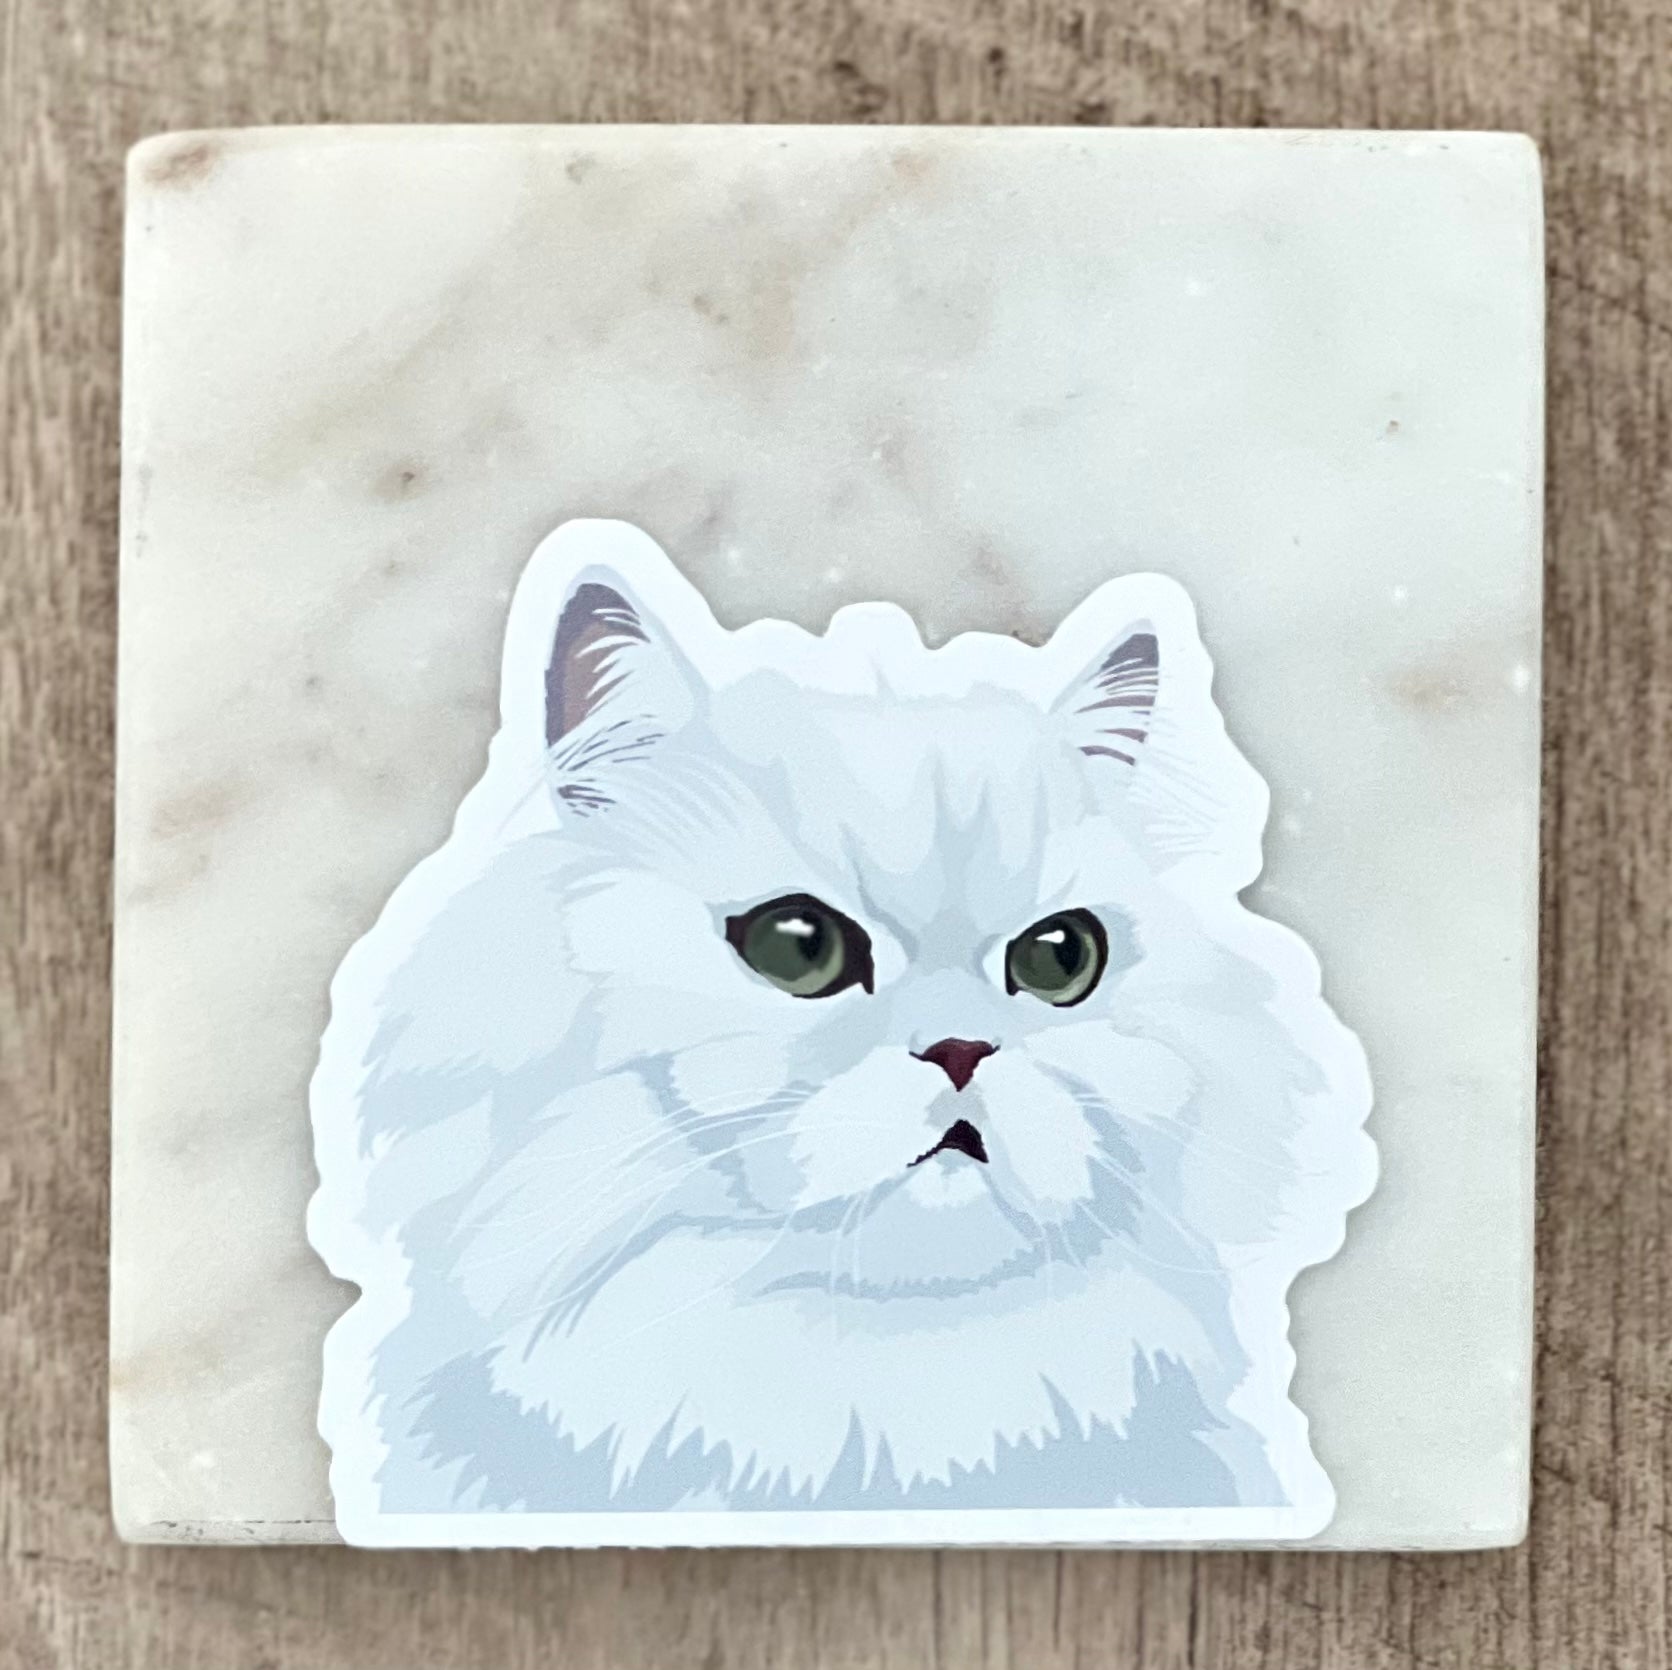 Persian cat sticker, 3", die cut, waterproof, vinyl